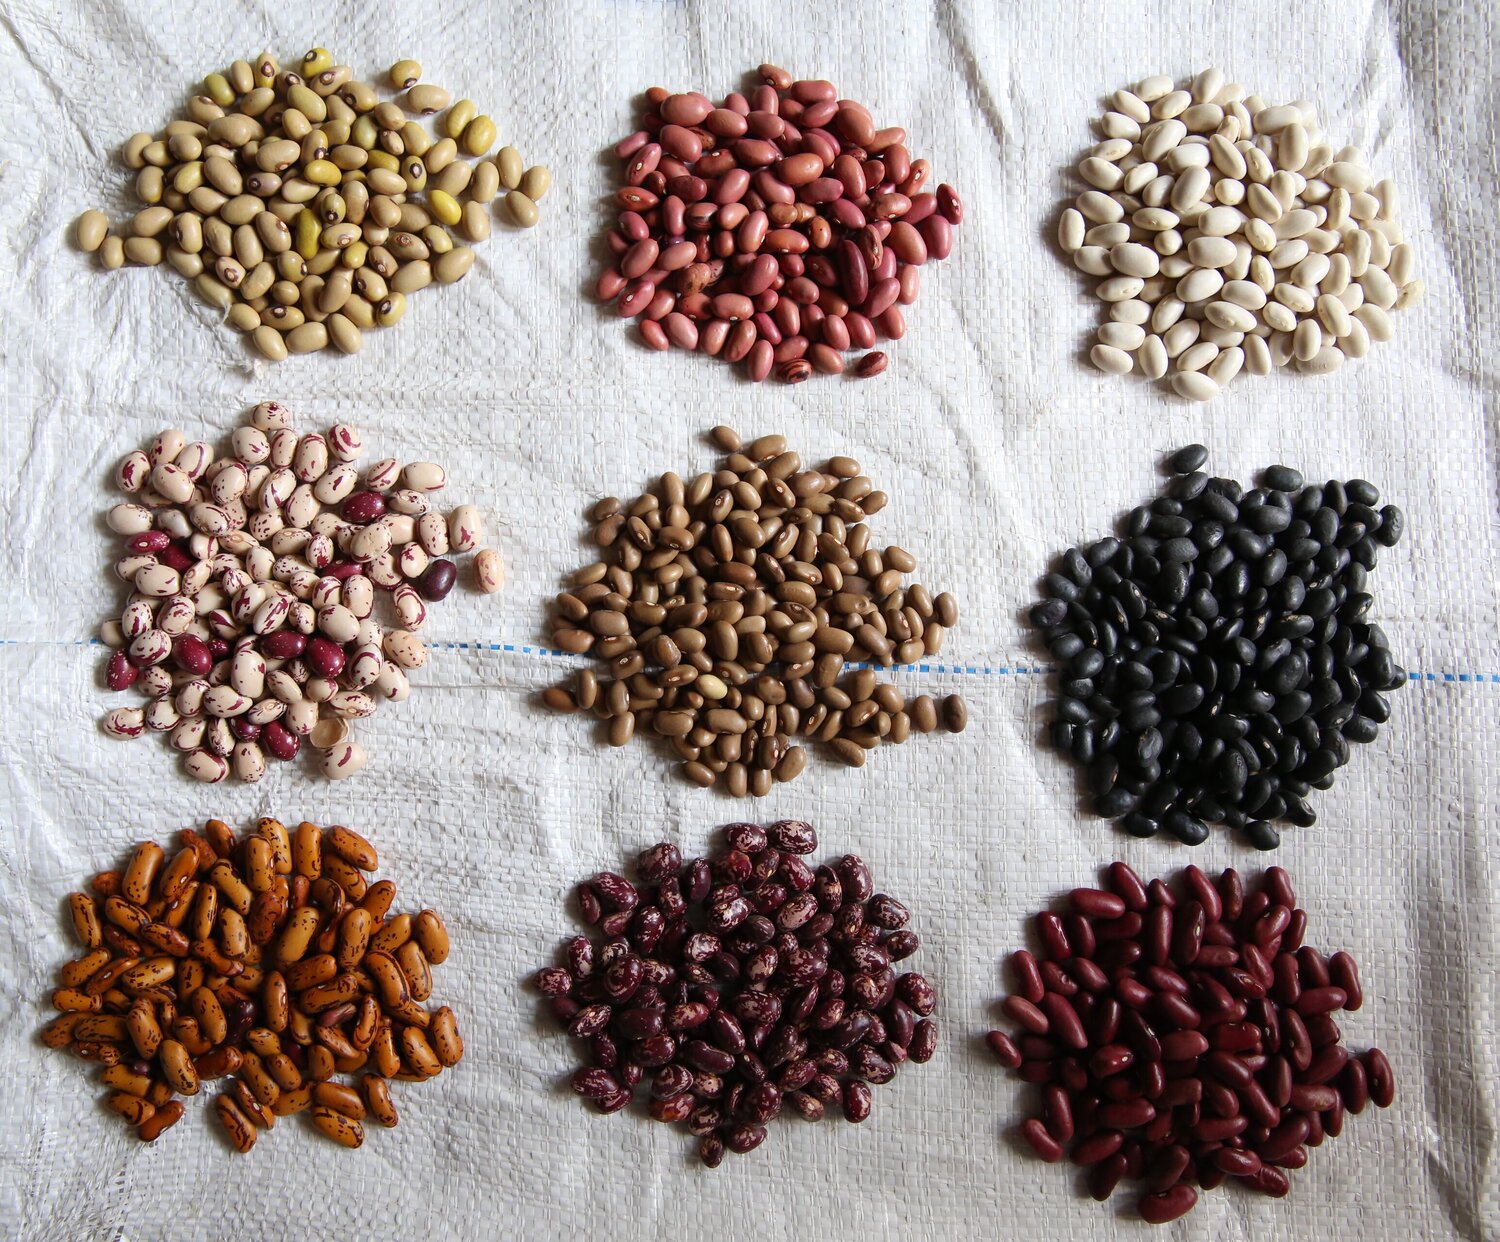 Nine piles of bean varieties